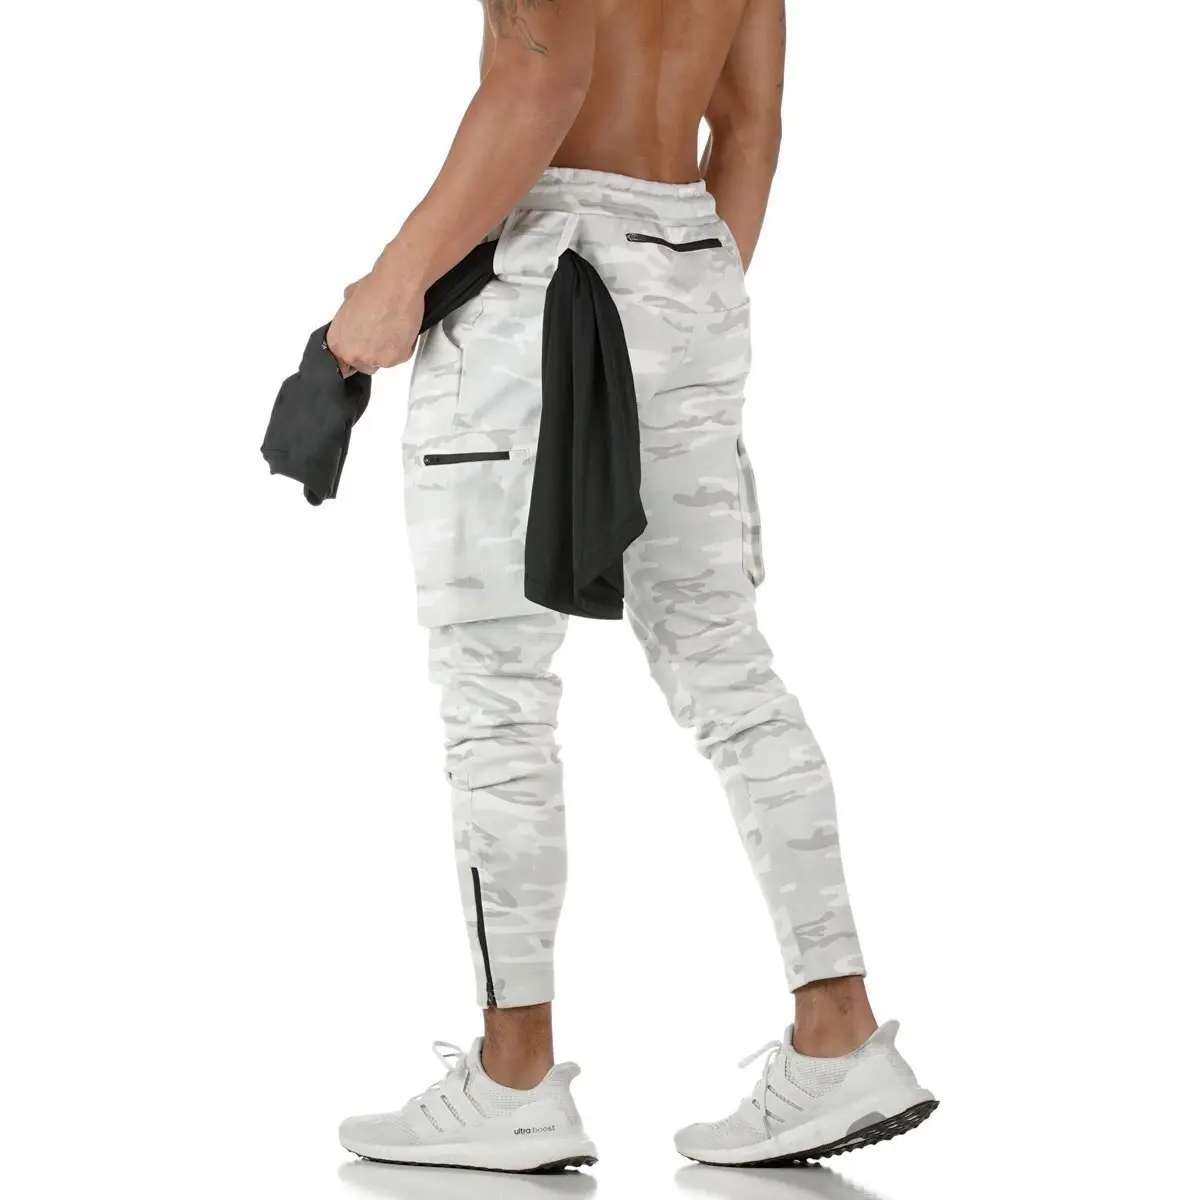 Vedo-pantalones de gimnasio para Hombre Ropa deportiva con Logo personalizado, 80% Algodón, para entrenamiento, correr, con bolsillos